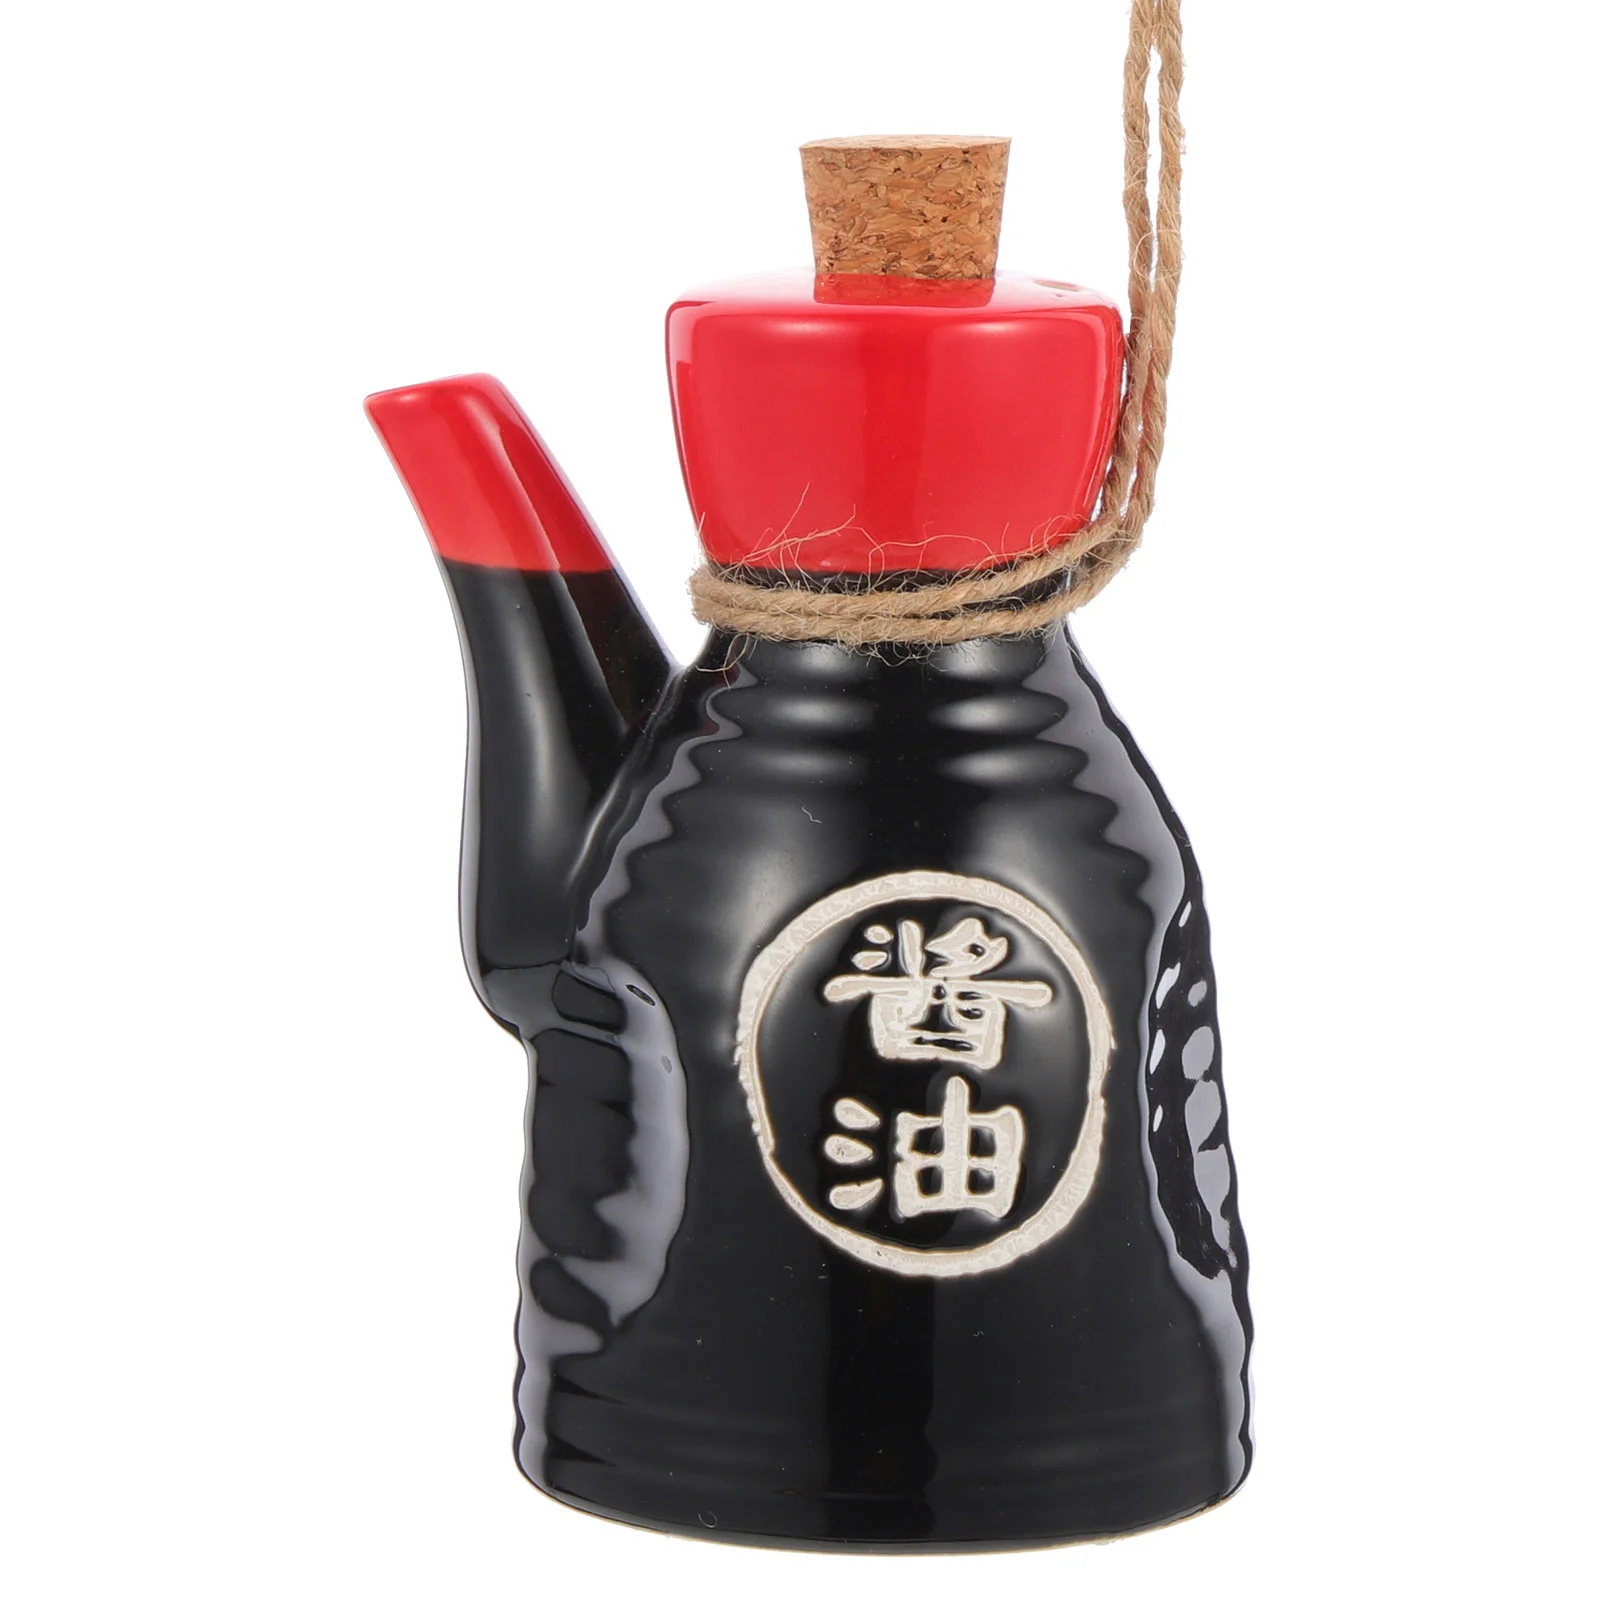 

Бутылка для соевого соуса и уксуса, контейнеры для специй, керамические приправы в японском стиле